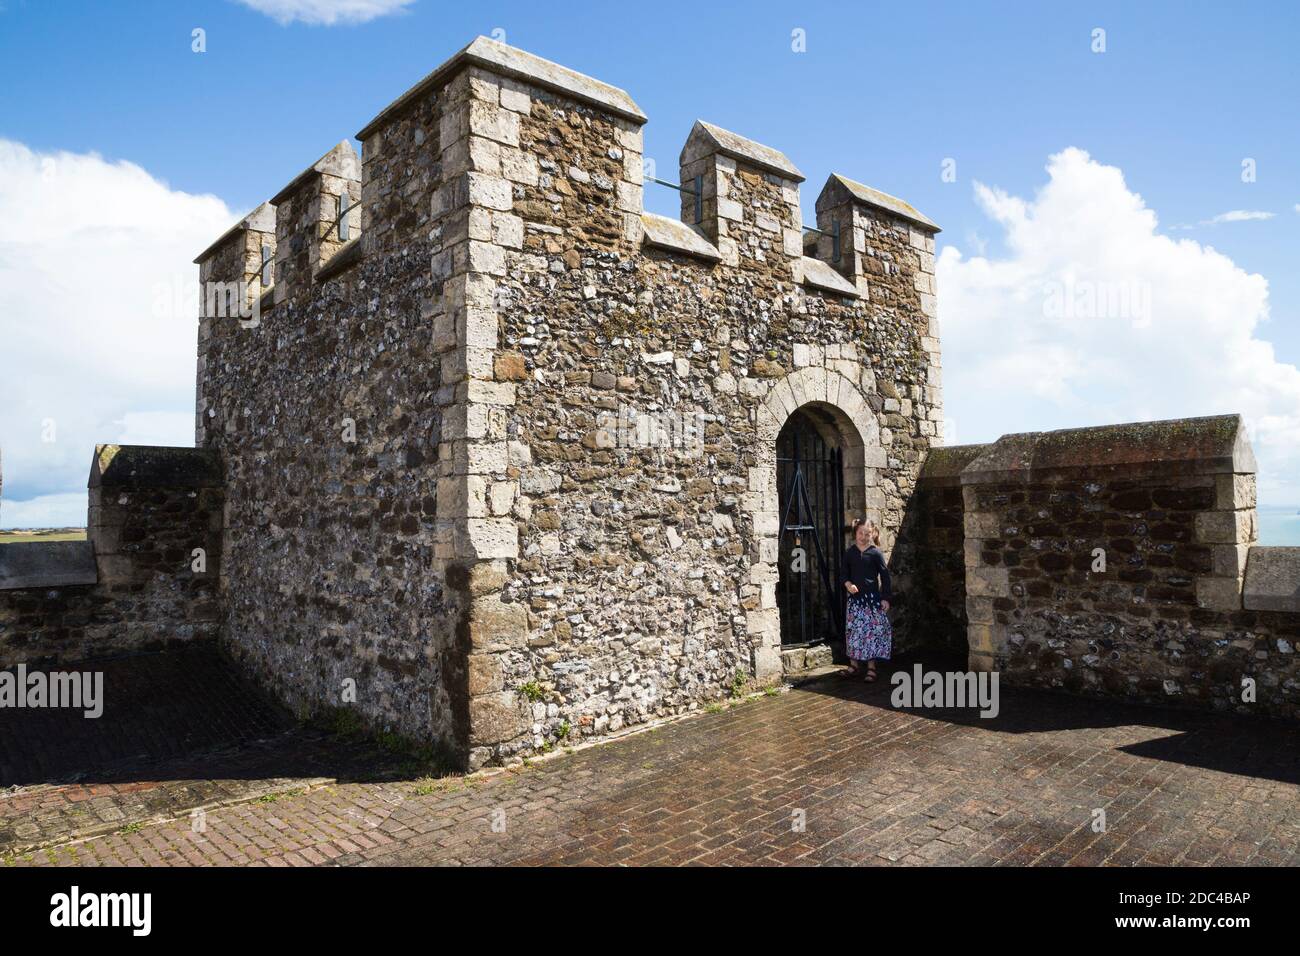 Le toit et la tour d'angle avec des murs à créneaux au sommet de la Grande Tour du château de Douvres, Douvres, Kent. ROYAUME-UNI. Le jour d'été ensoleillé avec ciel bleu et soleil. (121) Banque D'Images